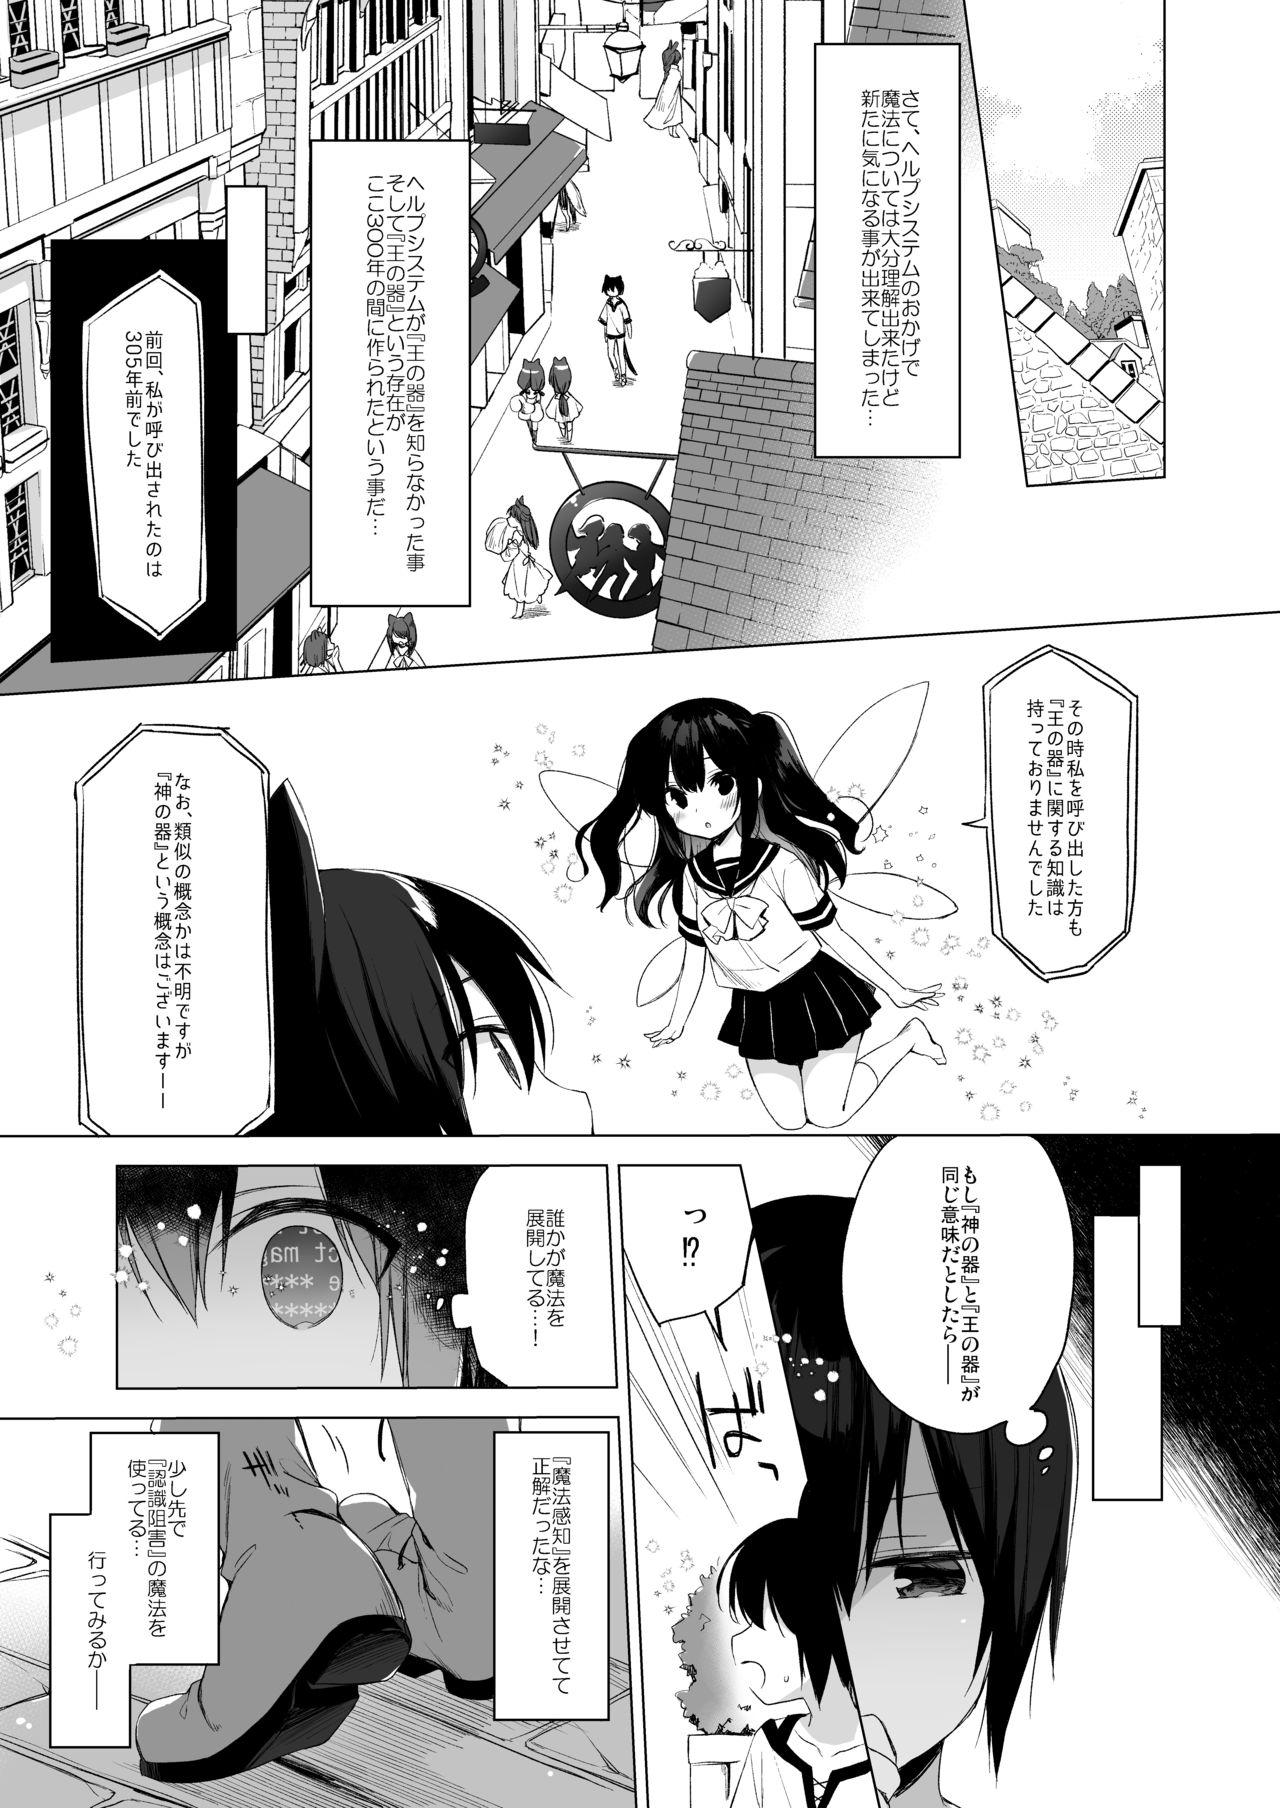 Reversecowgirl Boku no Risou no Isekai Seikatsu 9 - Original Slapping - Page 4